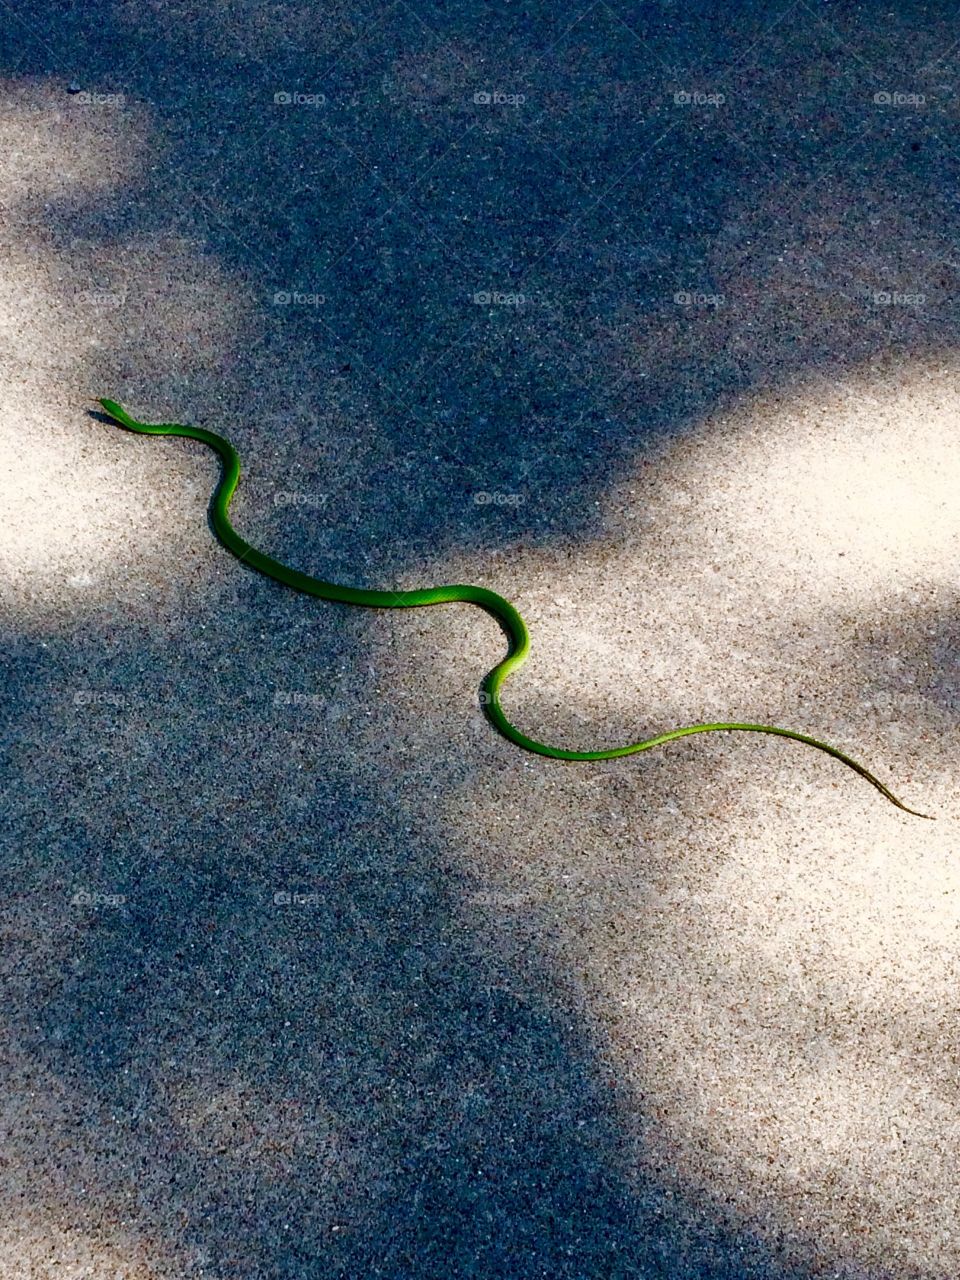 Snake. 